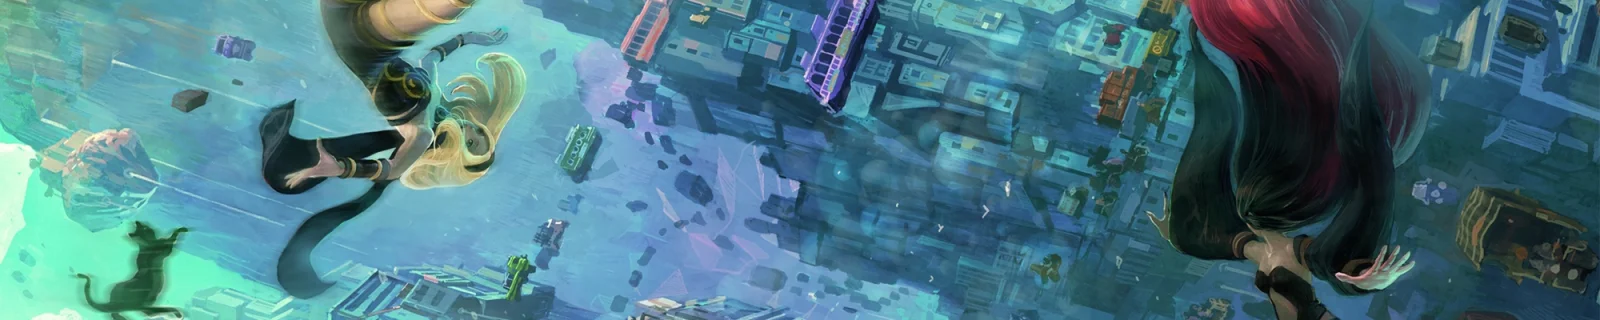 《重力异想世界2》地图为前作2.5倍